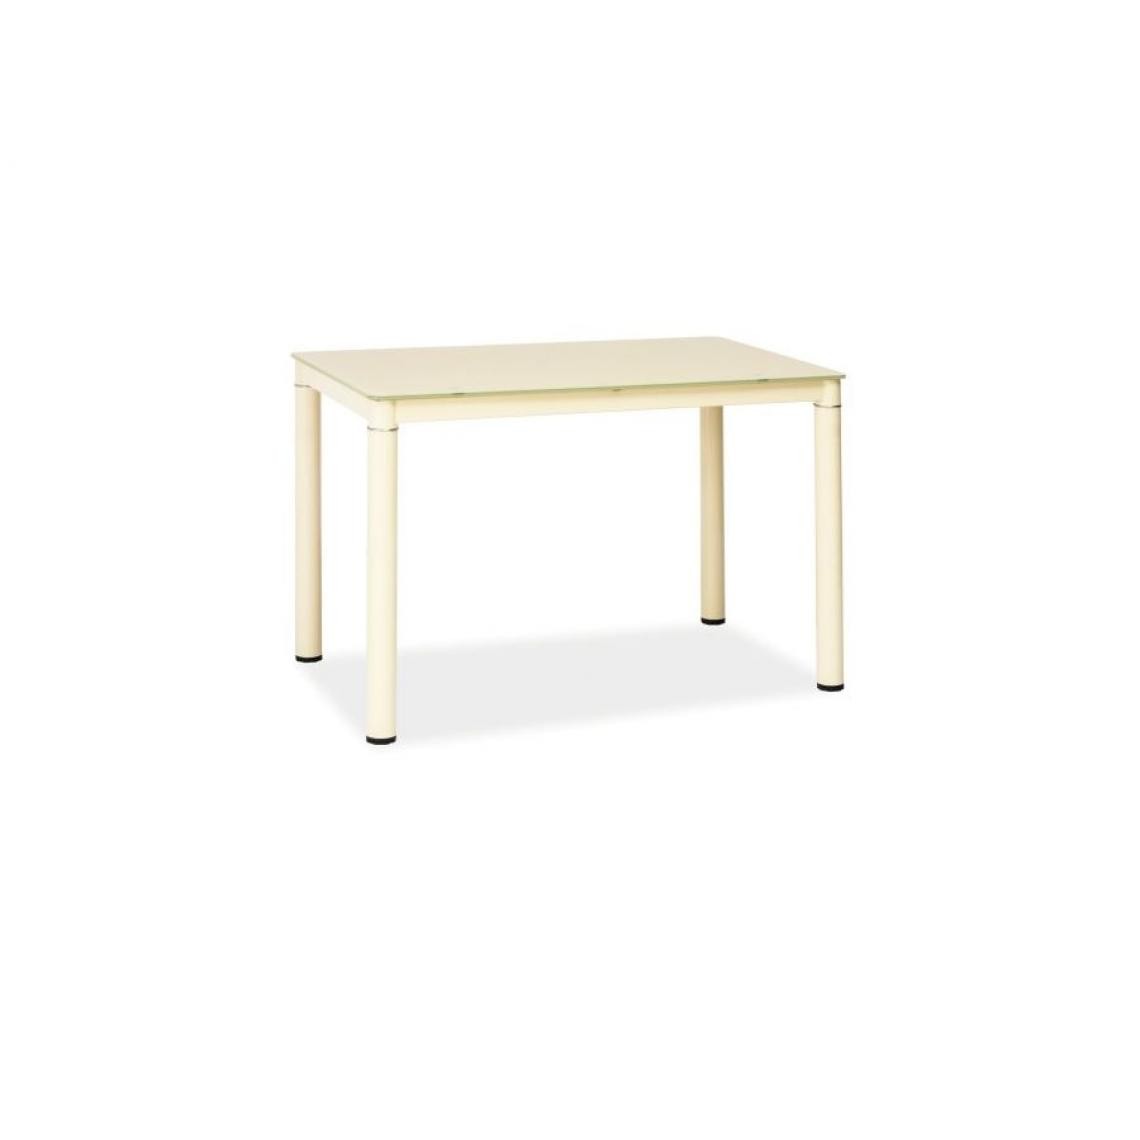 Hucoco - GASANT - Table moderne pour salle à manger salon cafés - Dimensions : 110x70x75 cm - Plateau en verre - Blanc - Tables à manger